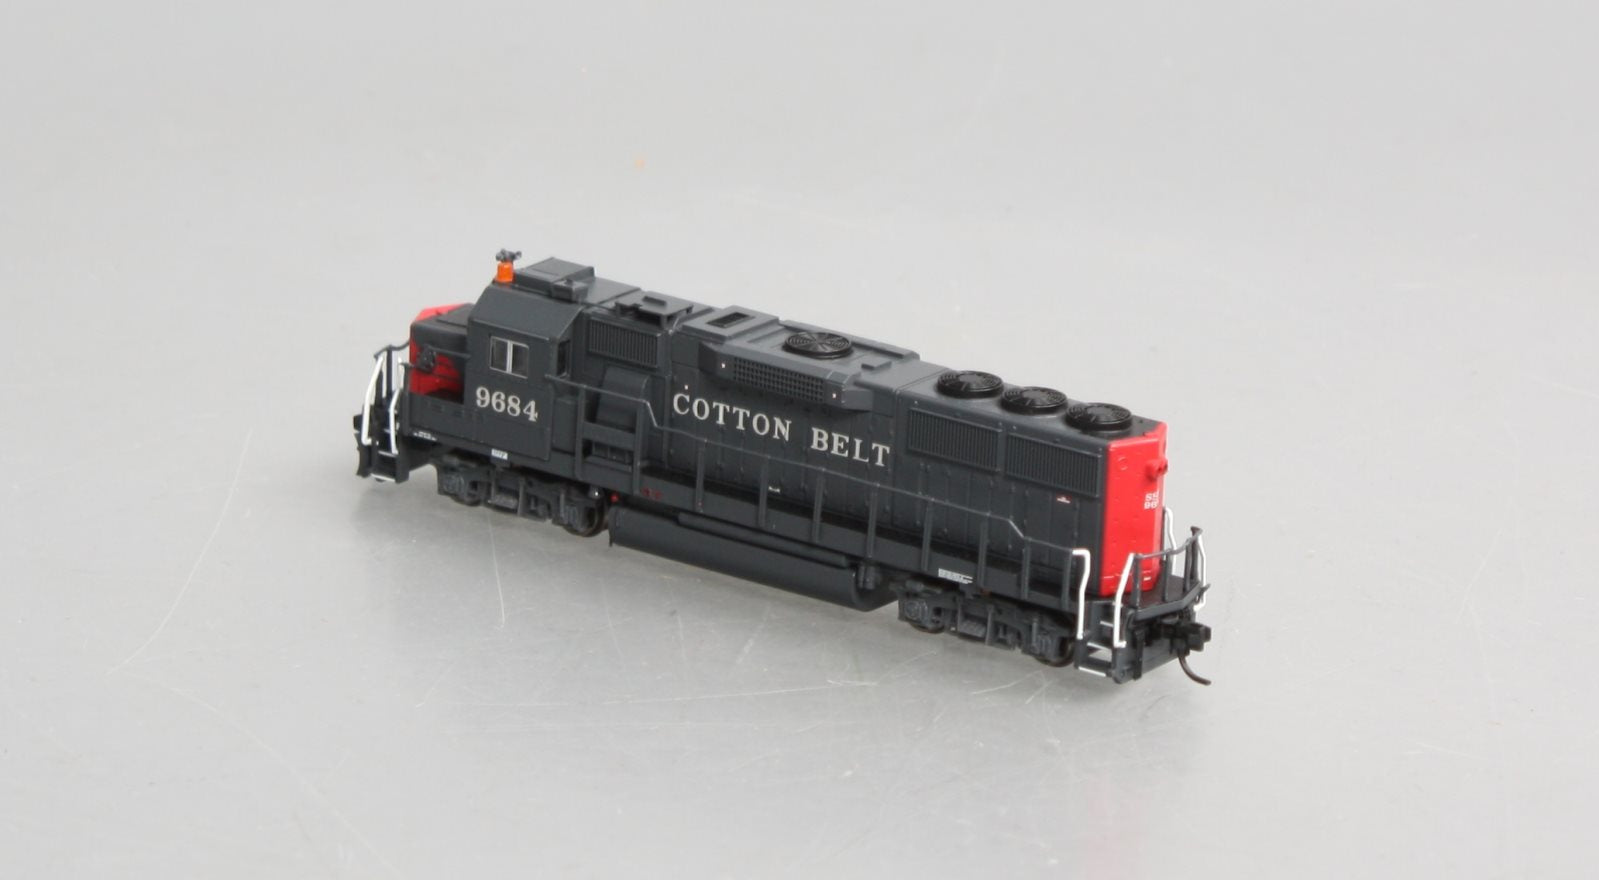 Fox Valley Models 70853 N Cotton Belt EMD Late GP60 Diesel Locomotive #9684